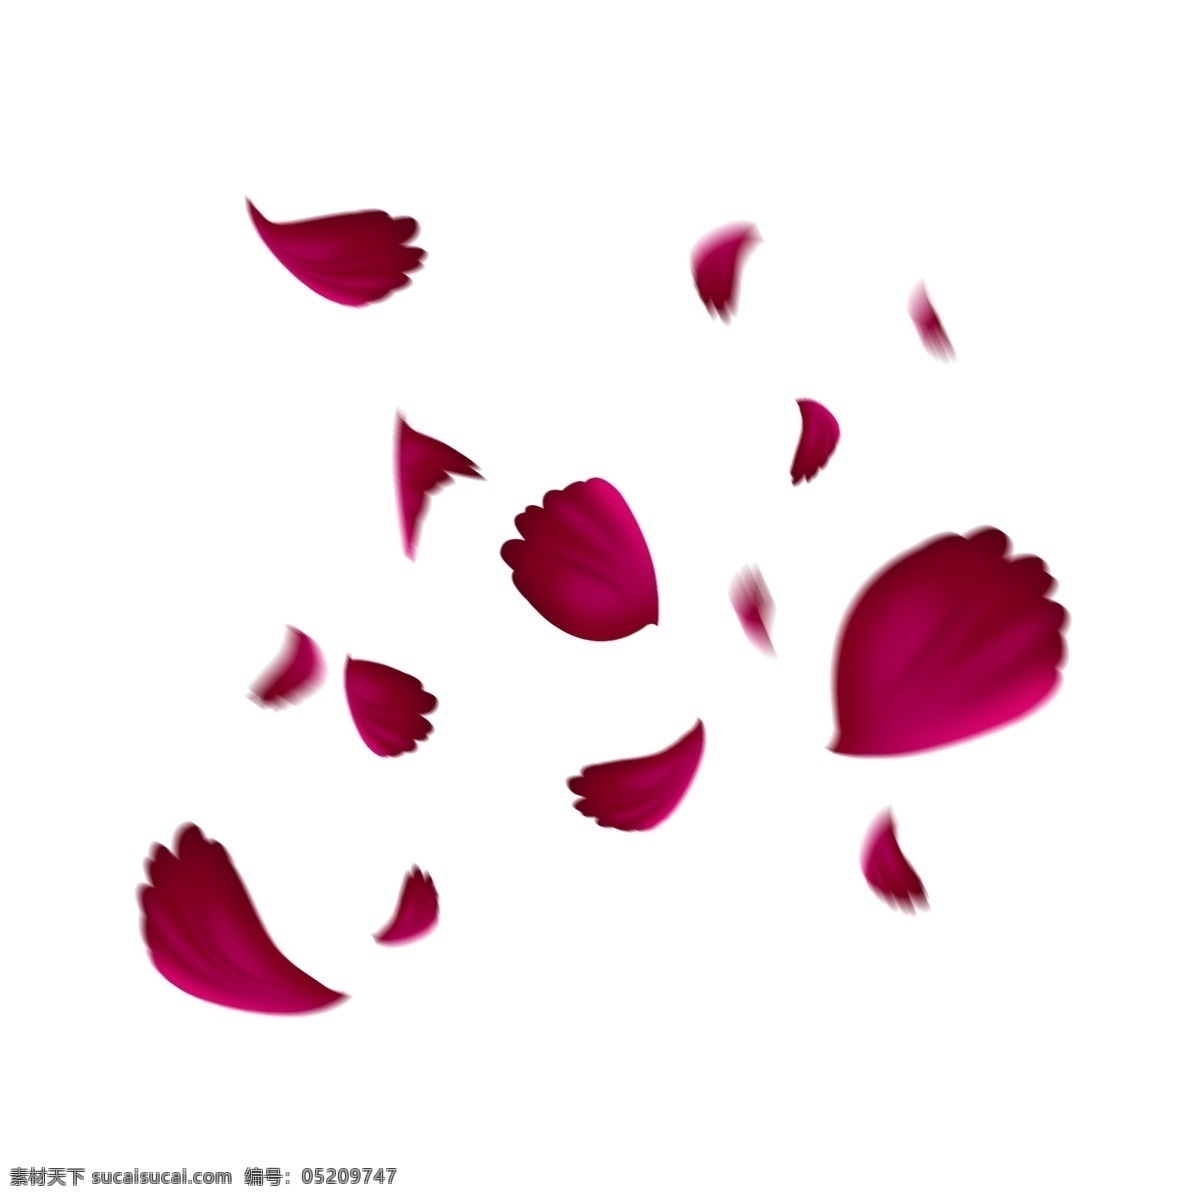 飘浮 飘落 玫瑰 花瓣 海报 唯美 浪漫 情人节 七夕 飘浮的花瓣 玫瑰花瓣 海报装饰 海报素材 页面装饰 飘落的花瓣 飘浮素材 花瓣免扣 花瓣素材